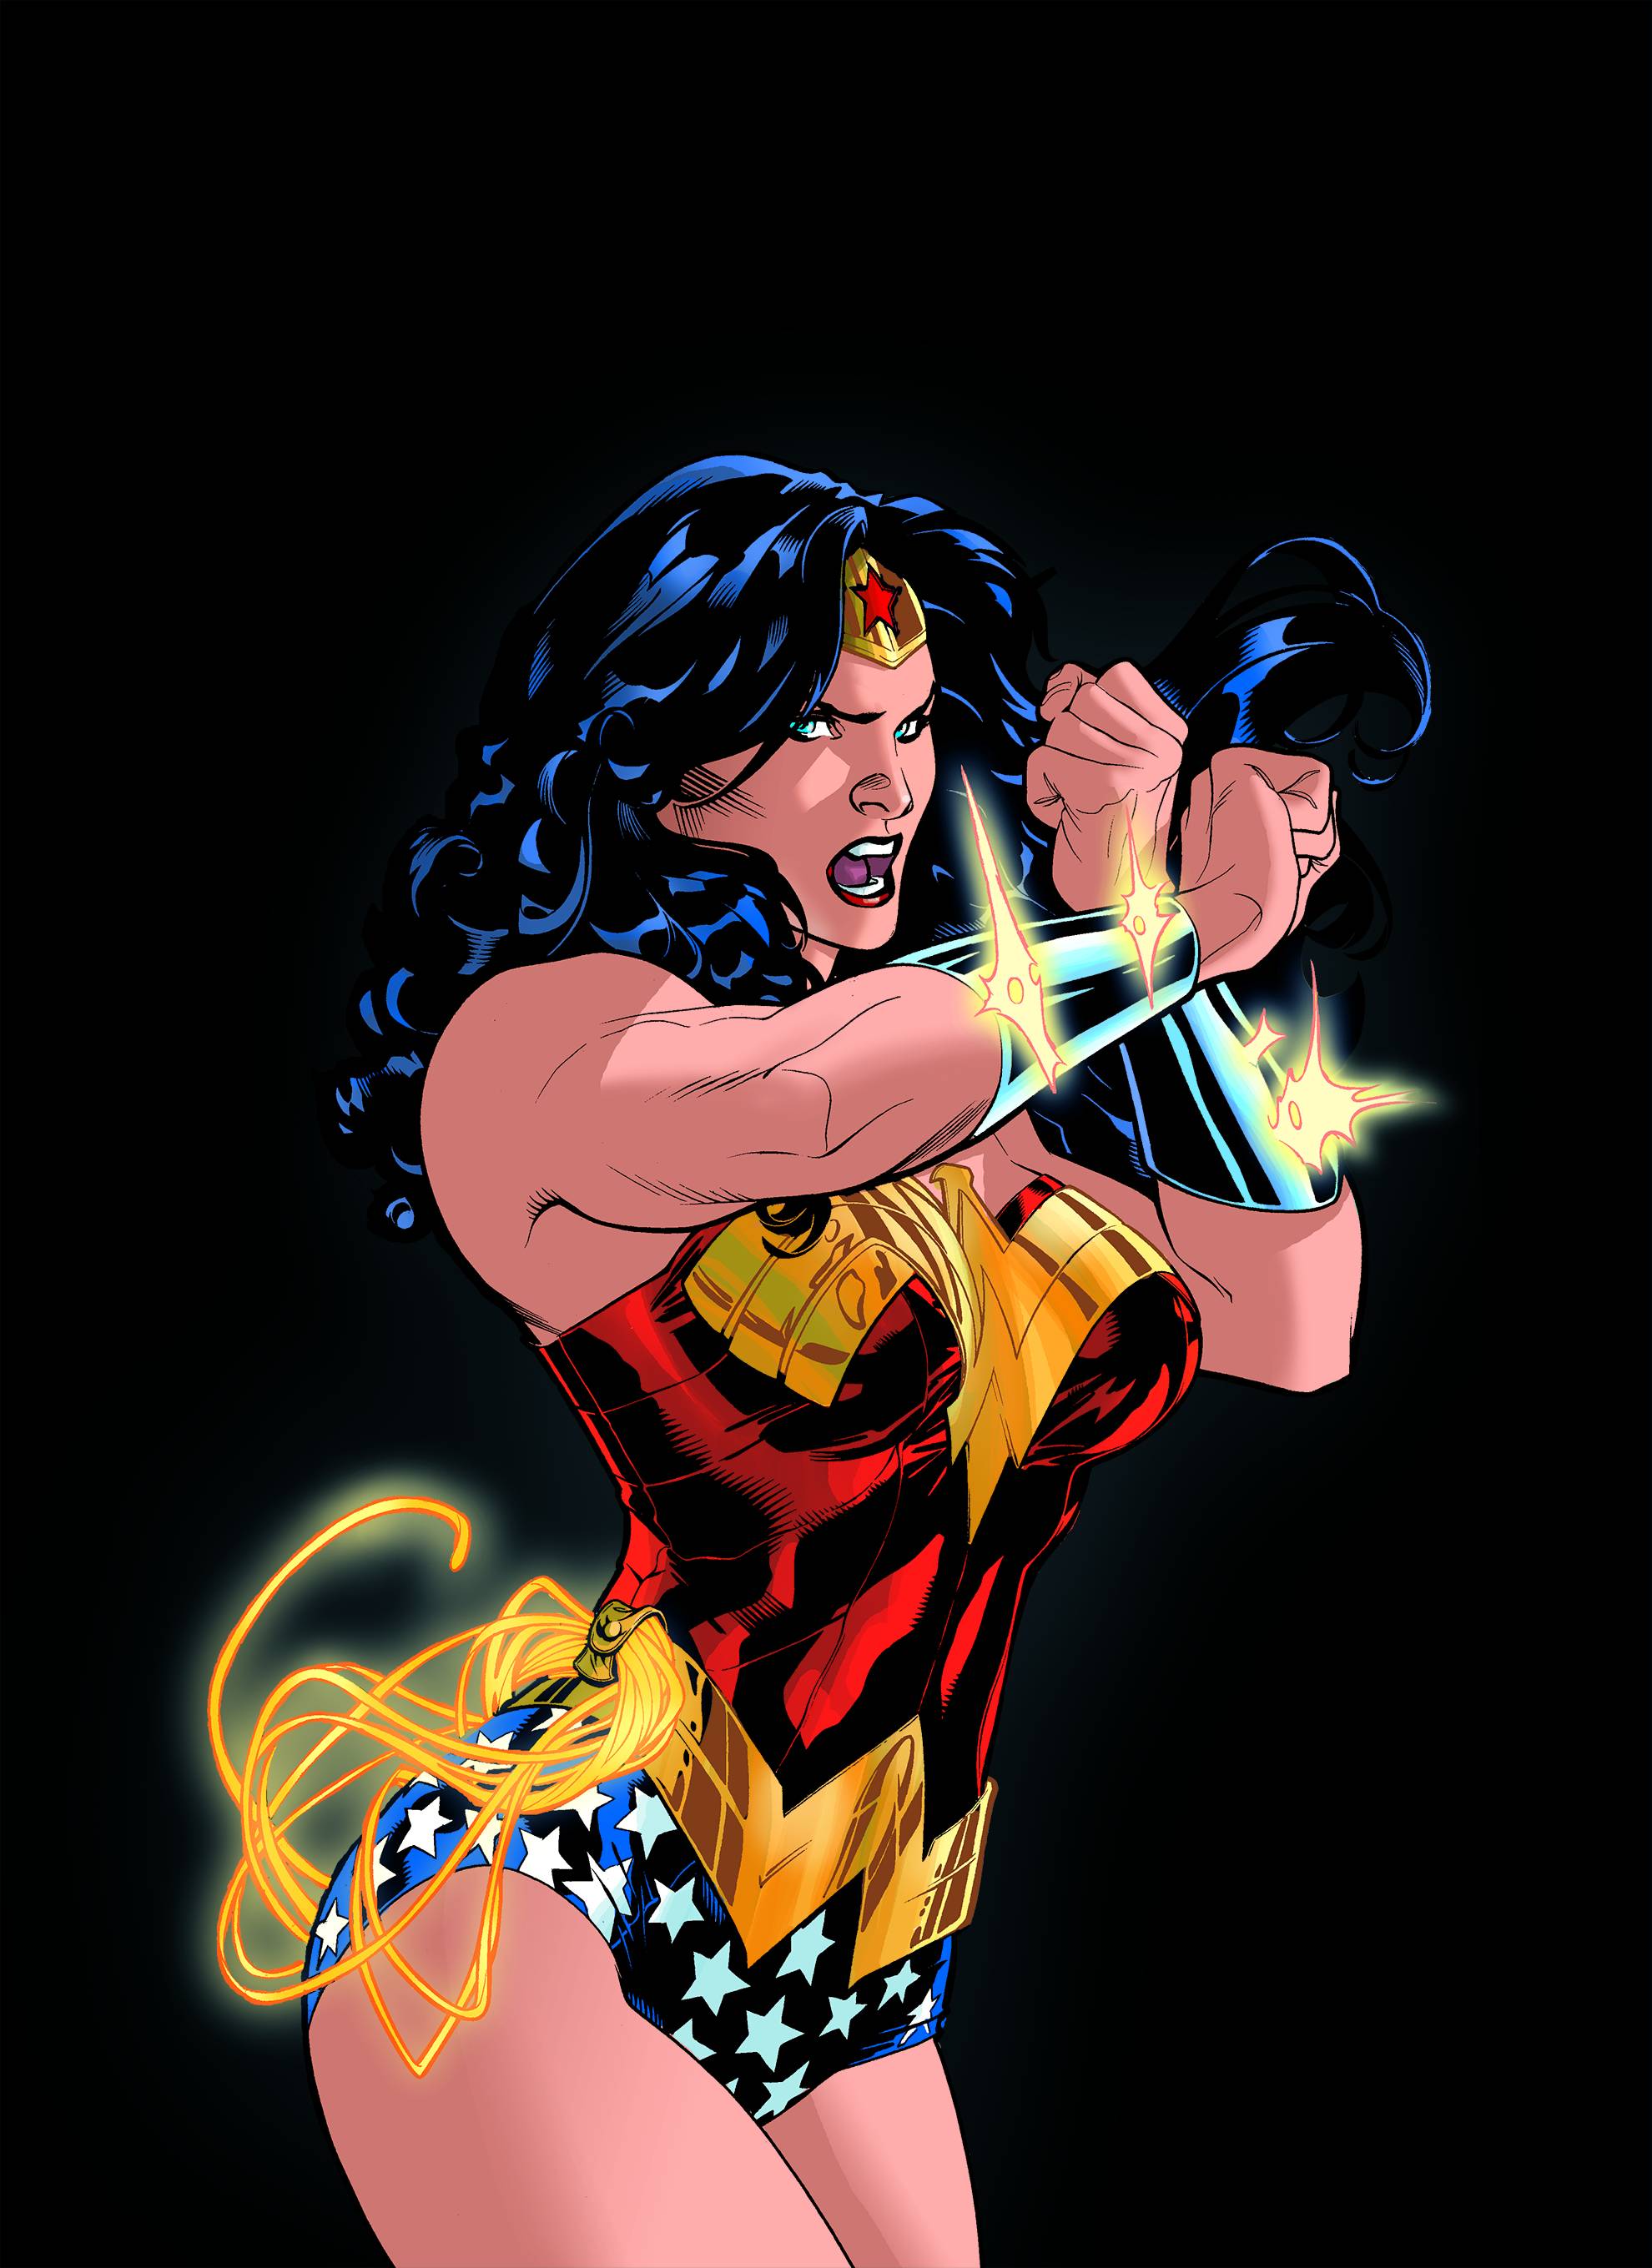 Wonder Woman (2009 film) - Wikipedia